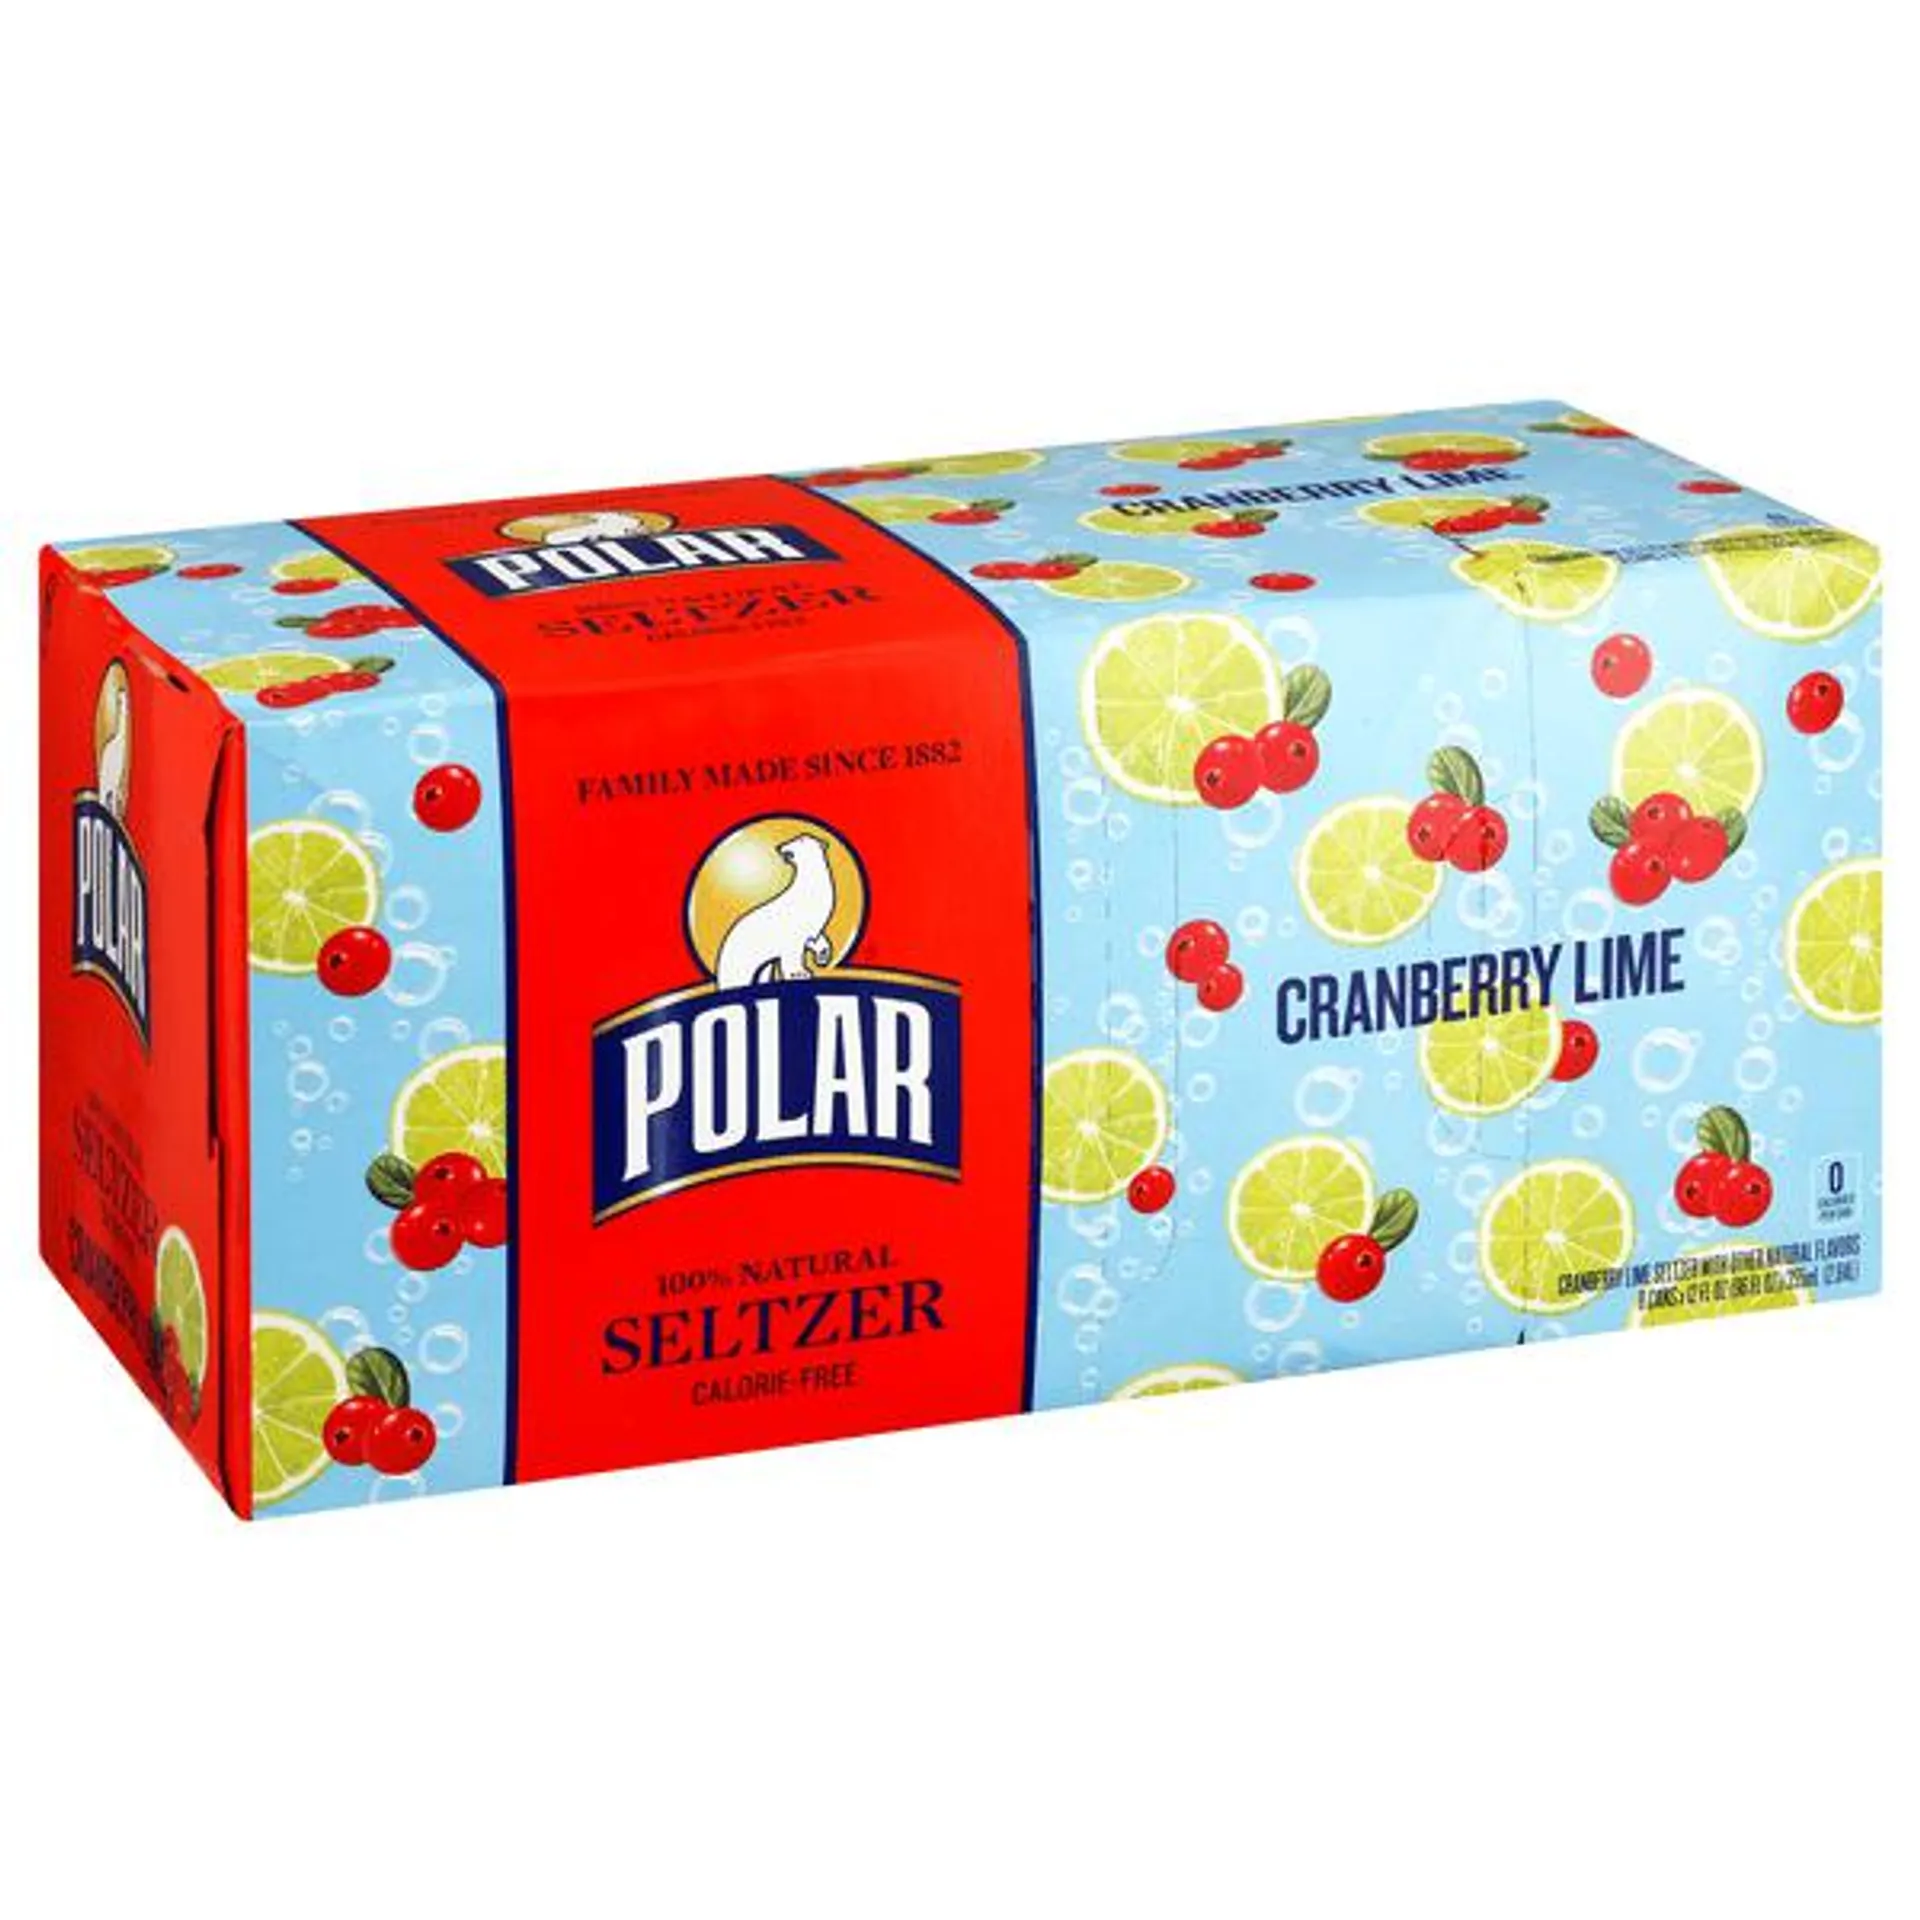 Polar Seltzer, 100% Natural, Cranberry Lime 8Pk